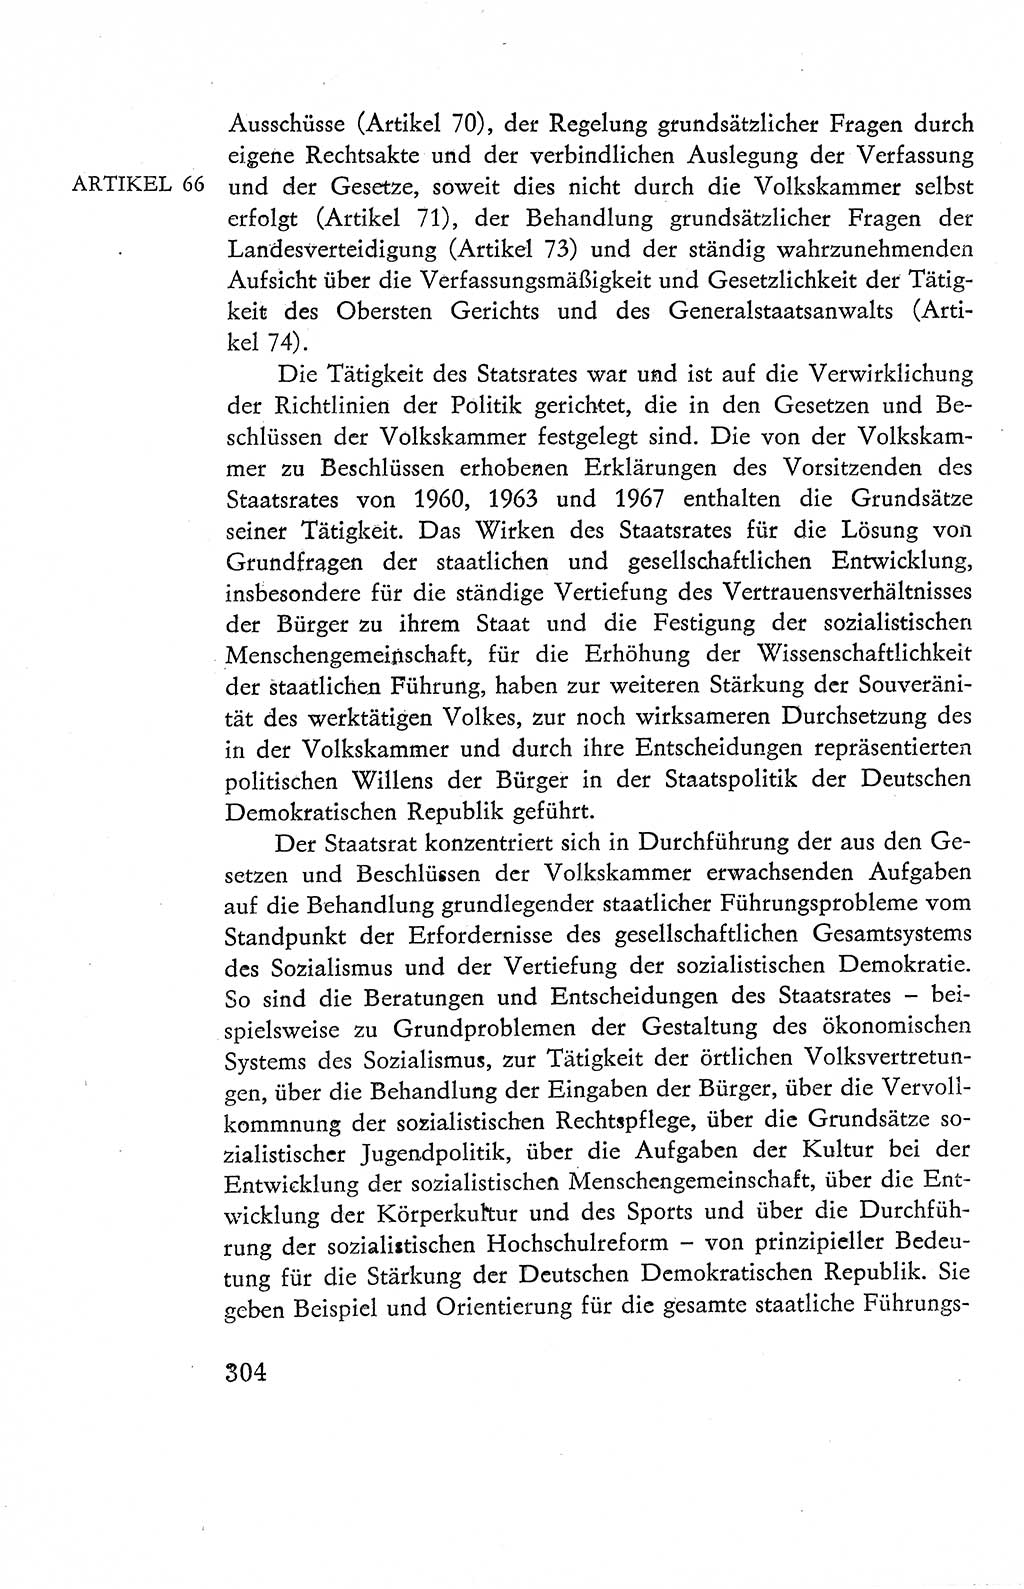 Verfassung der Deutschen Demokratischen Republik (DDR), Dokumente, Kommentar 1969, Band 2, Seite 304 (Verf. DDR Dok. Komm. 1969, Bd. 2, S. 304)